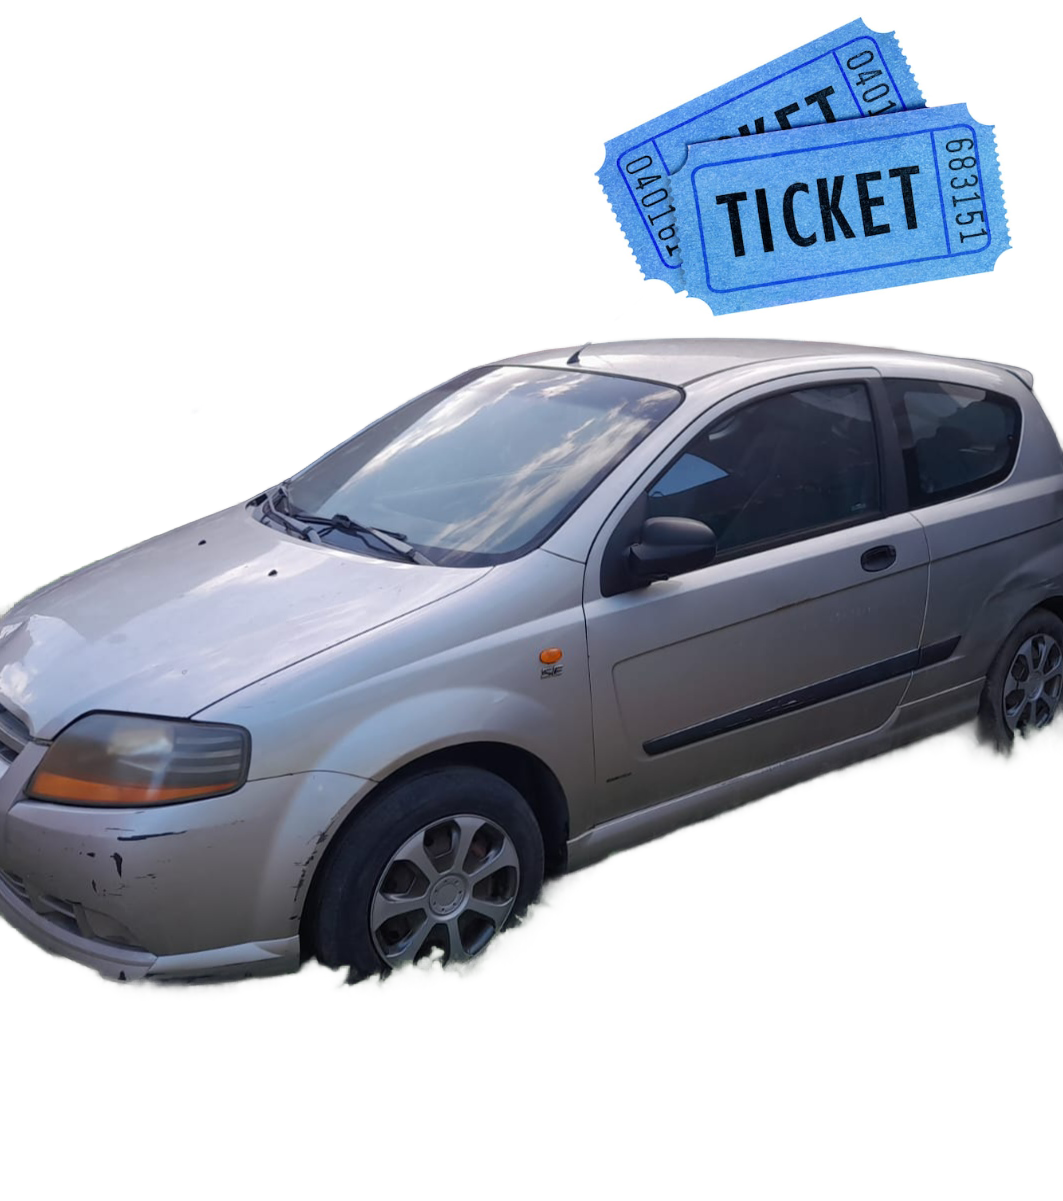 Ticket para sorteo coche valorado en 2.000€